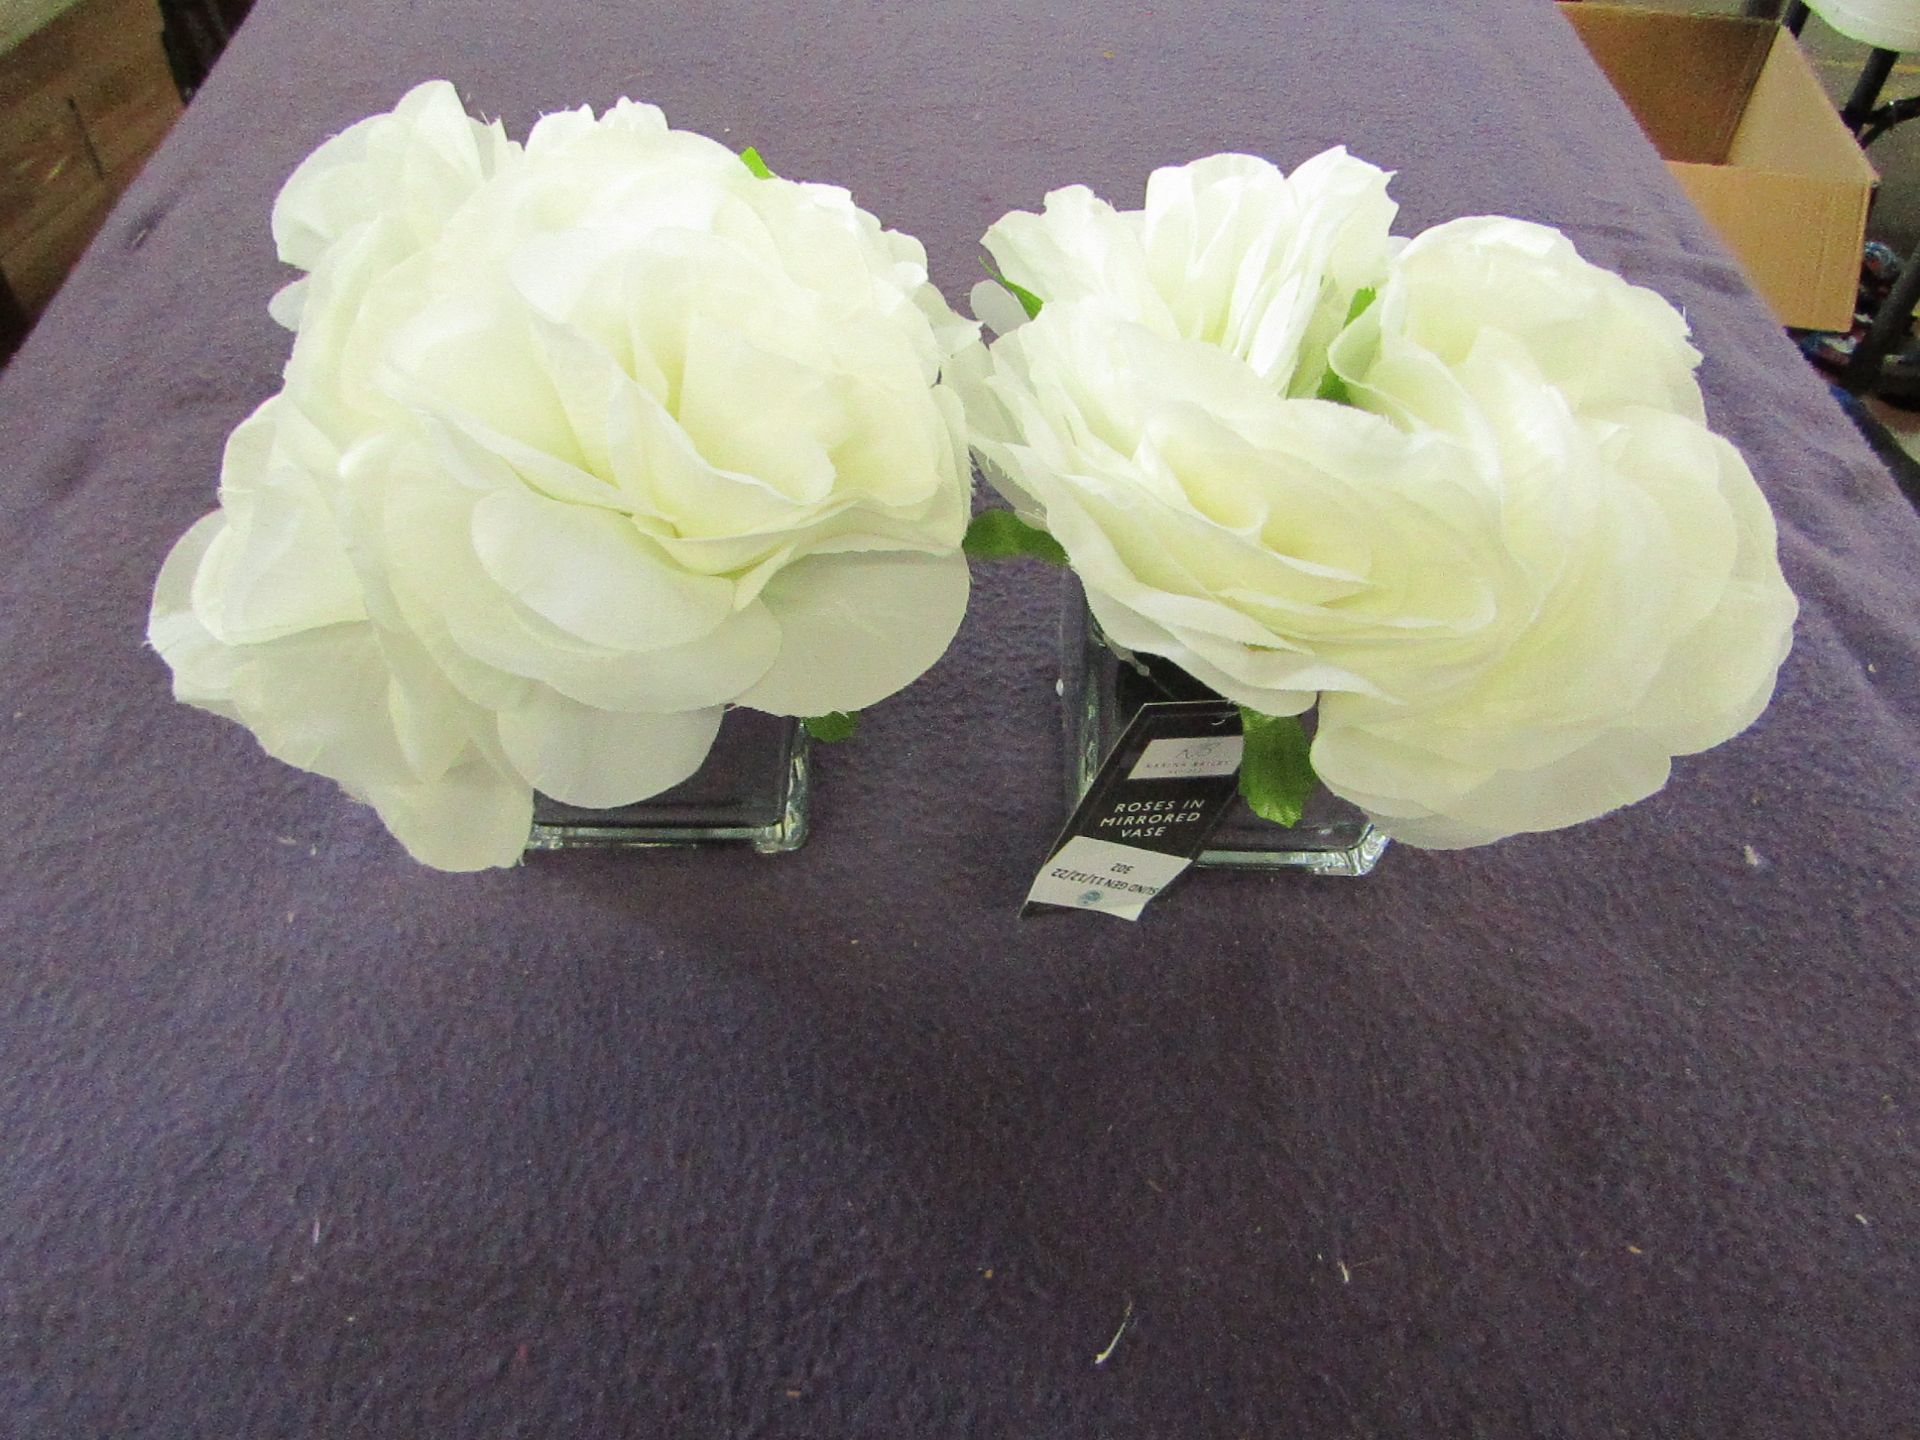 2x Karina Bailey - White Roses In Mirror Vase - Unused, No Packaging.